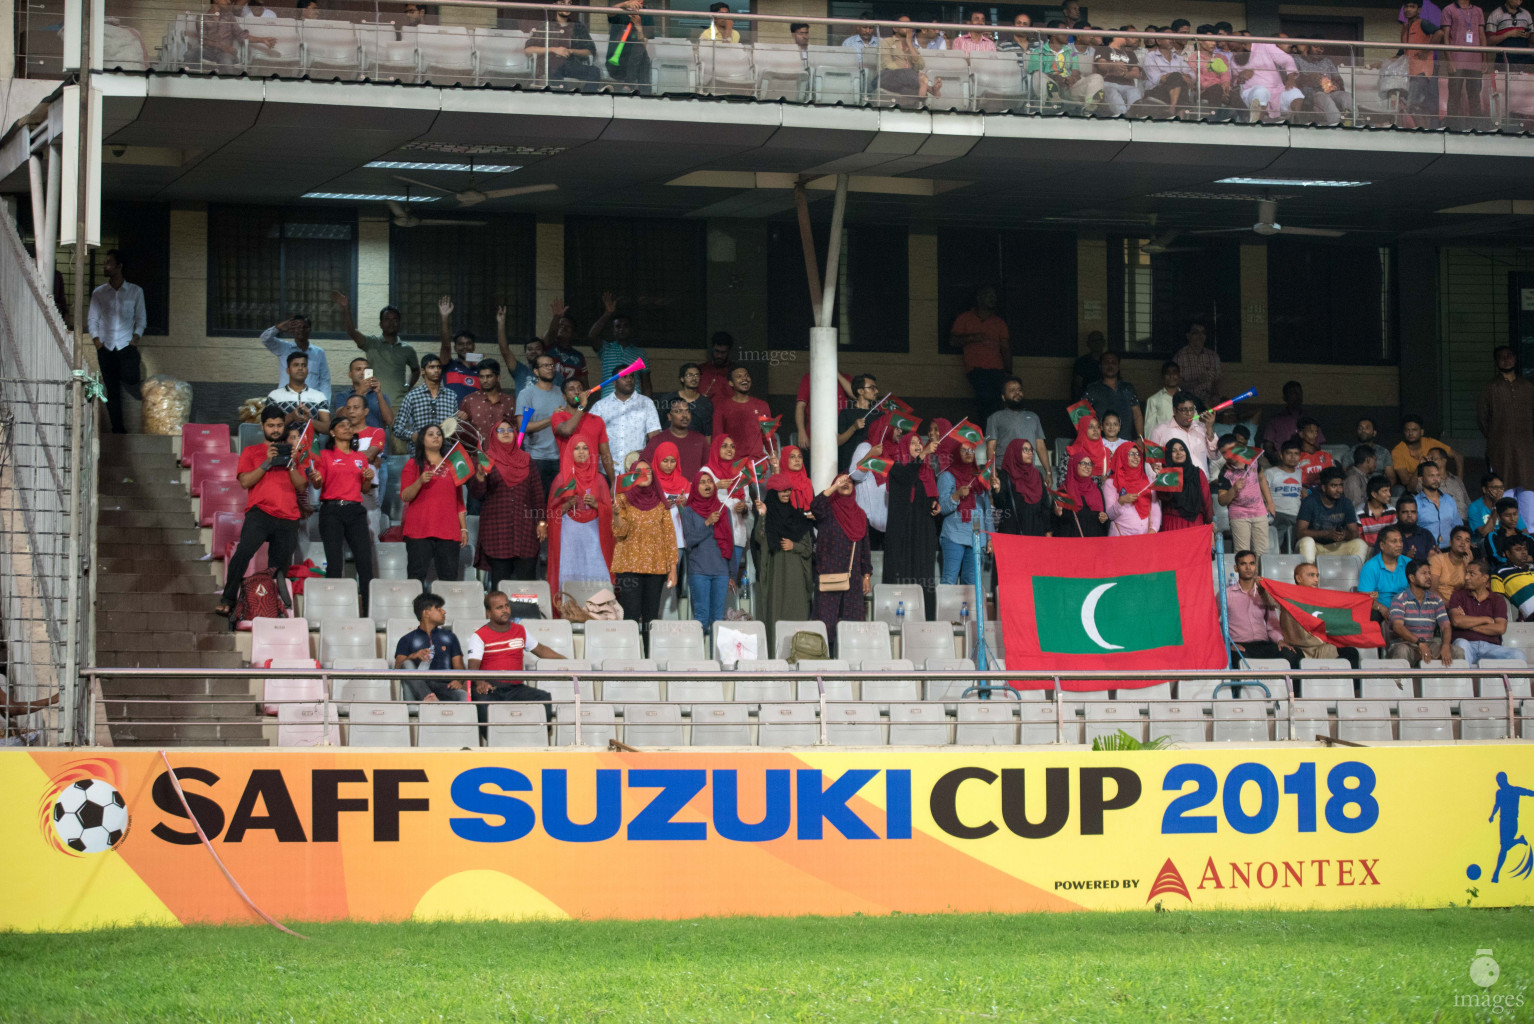 epal vs Maldives in SAFF Suzuki Cup 2018 semifinals in Dhaka, Bangladesh, Wednesdayepal vs Maldives in SAFF Suzuki Cup 2018 semifinals in Dhaka, Bangladesh, Wednesday, September 12, 2018. (Images.mv Photo/, September 12, 2018. (Images.mv Photo/Ismail Thoriq)